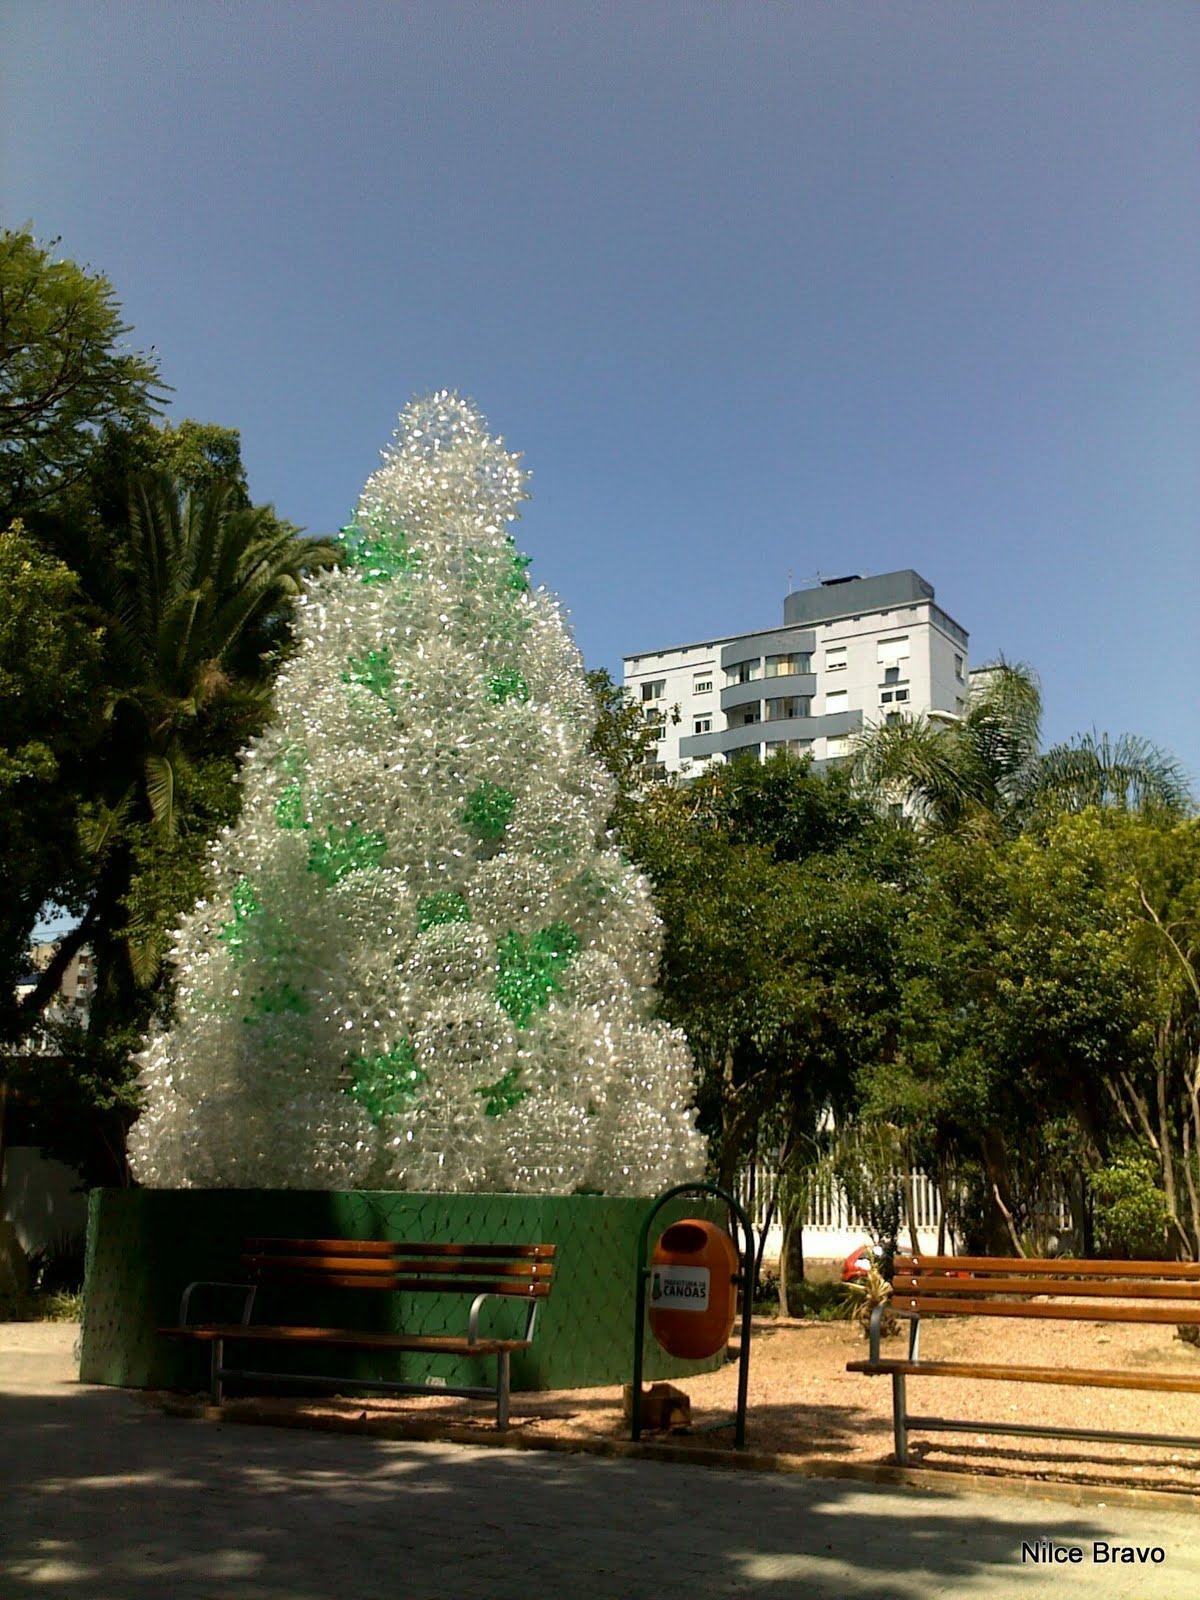 File:Reciclar é um luxo^ - Linda árvore de Natal feita com globos de  garrafas pet. Praça Emancipação Canoas RS - Natal da Transformação -   - Wikimedia Commons